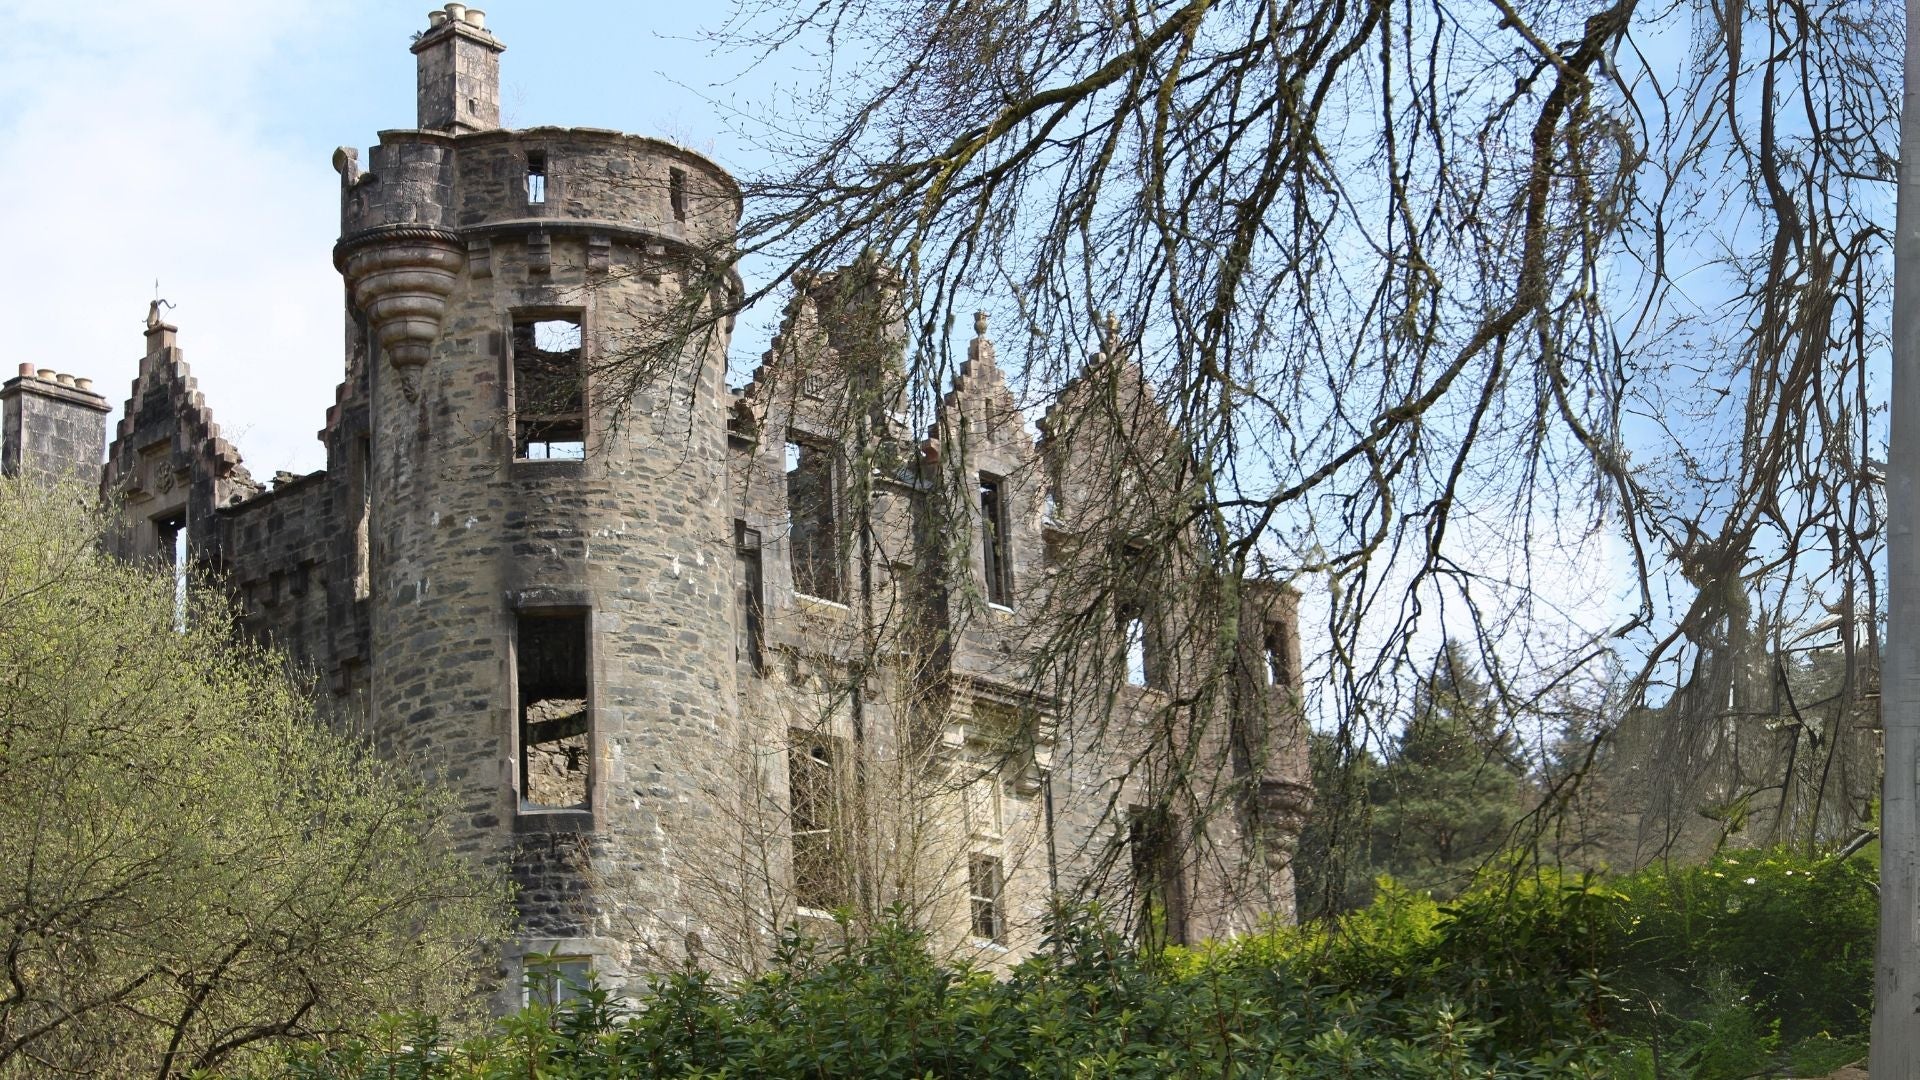 Dunoon Castle